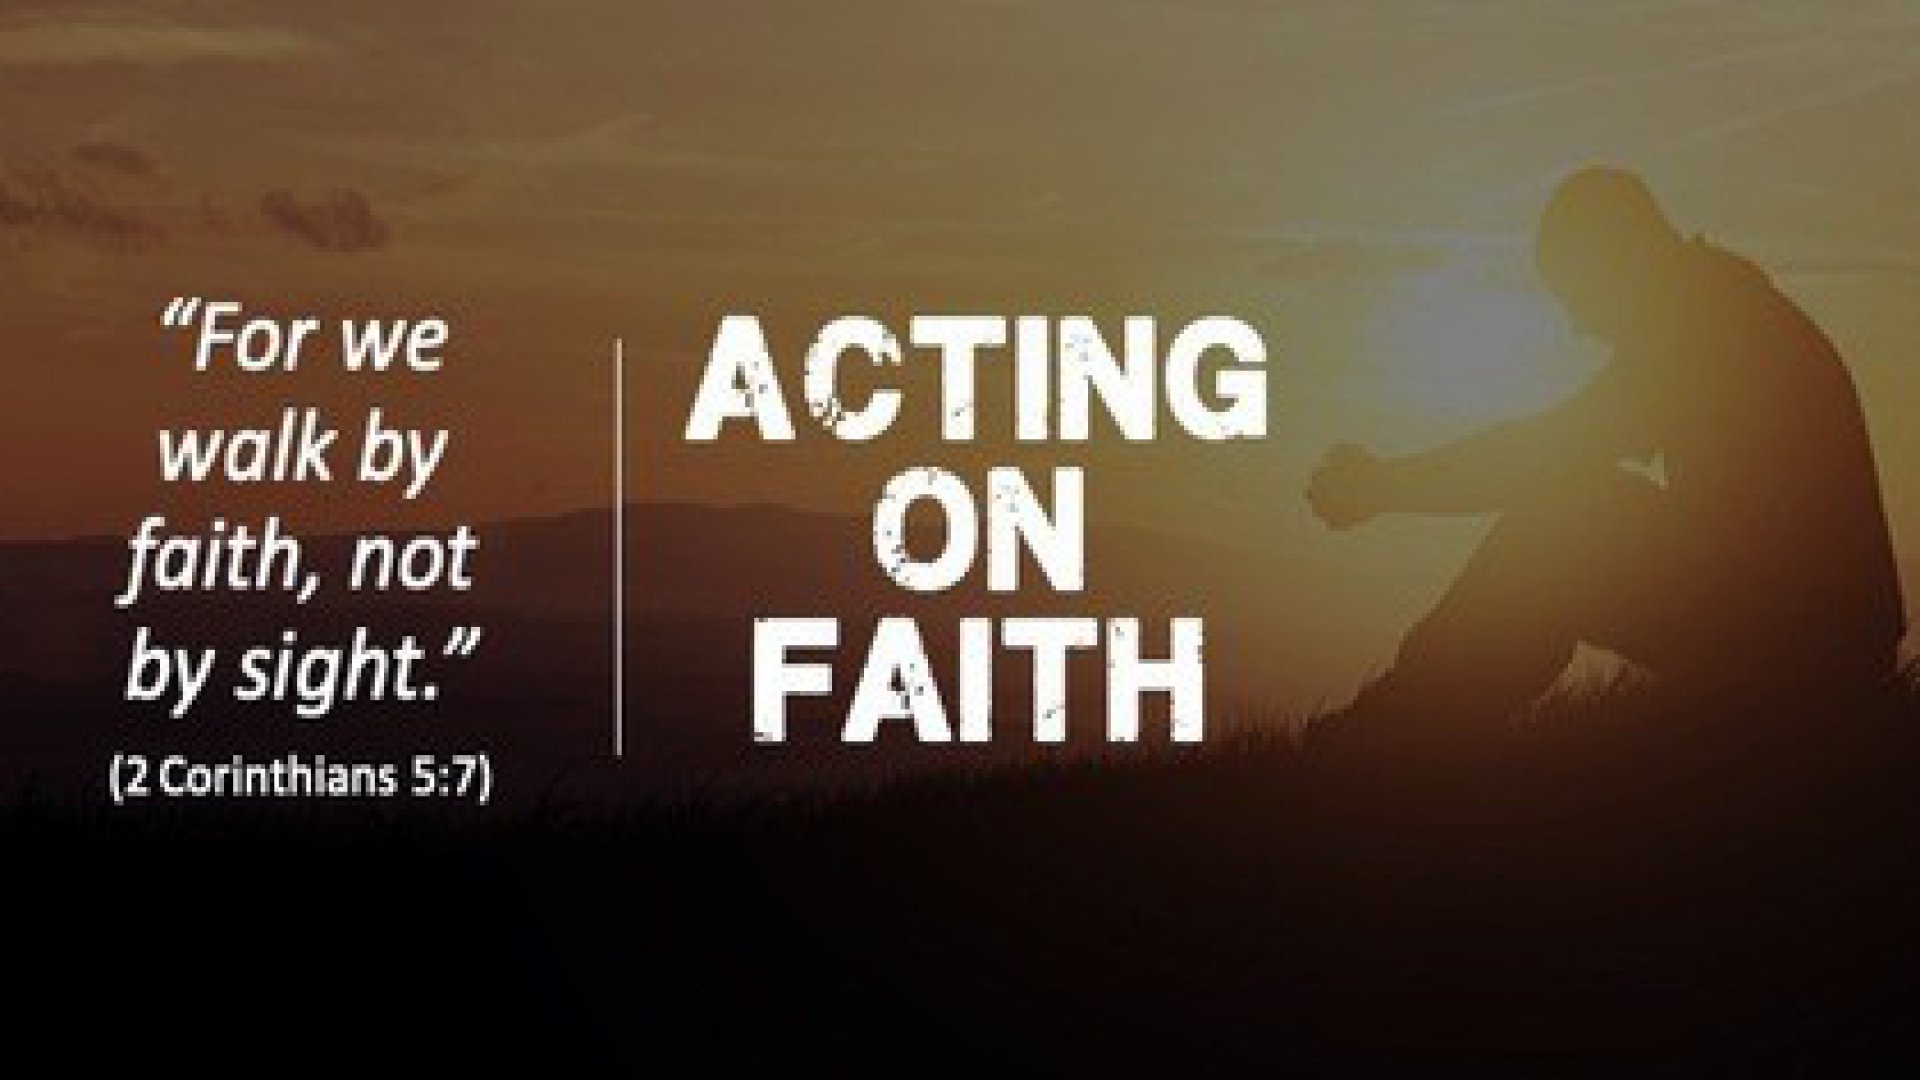 ACTING IN FAITH